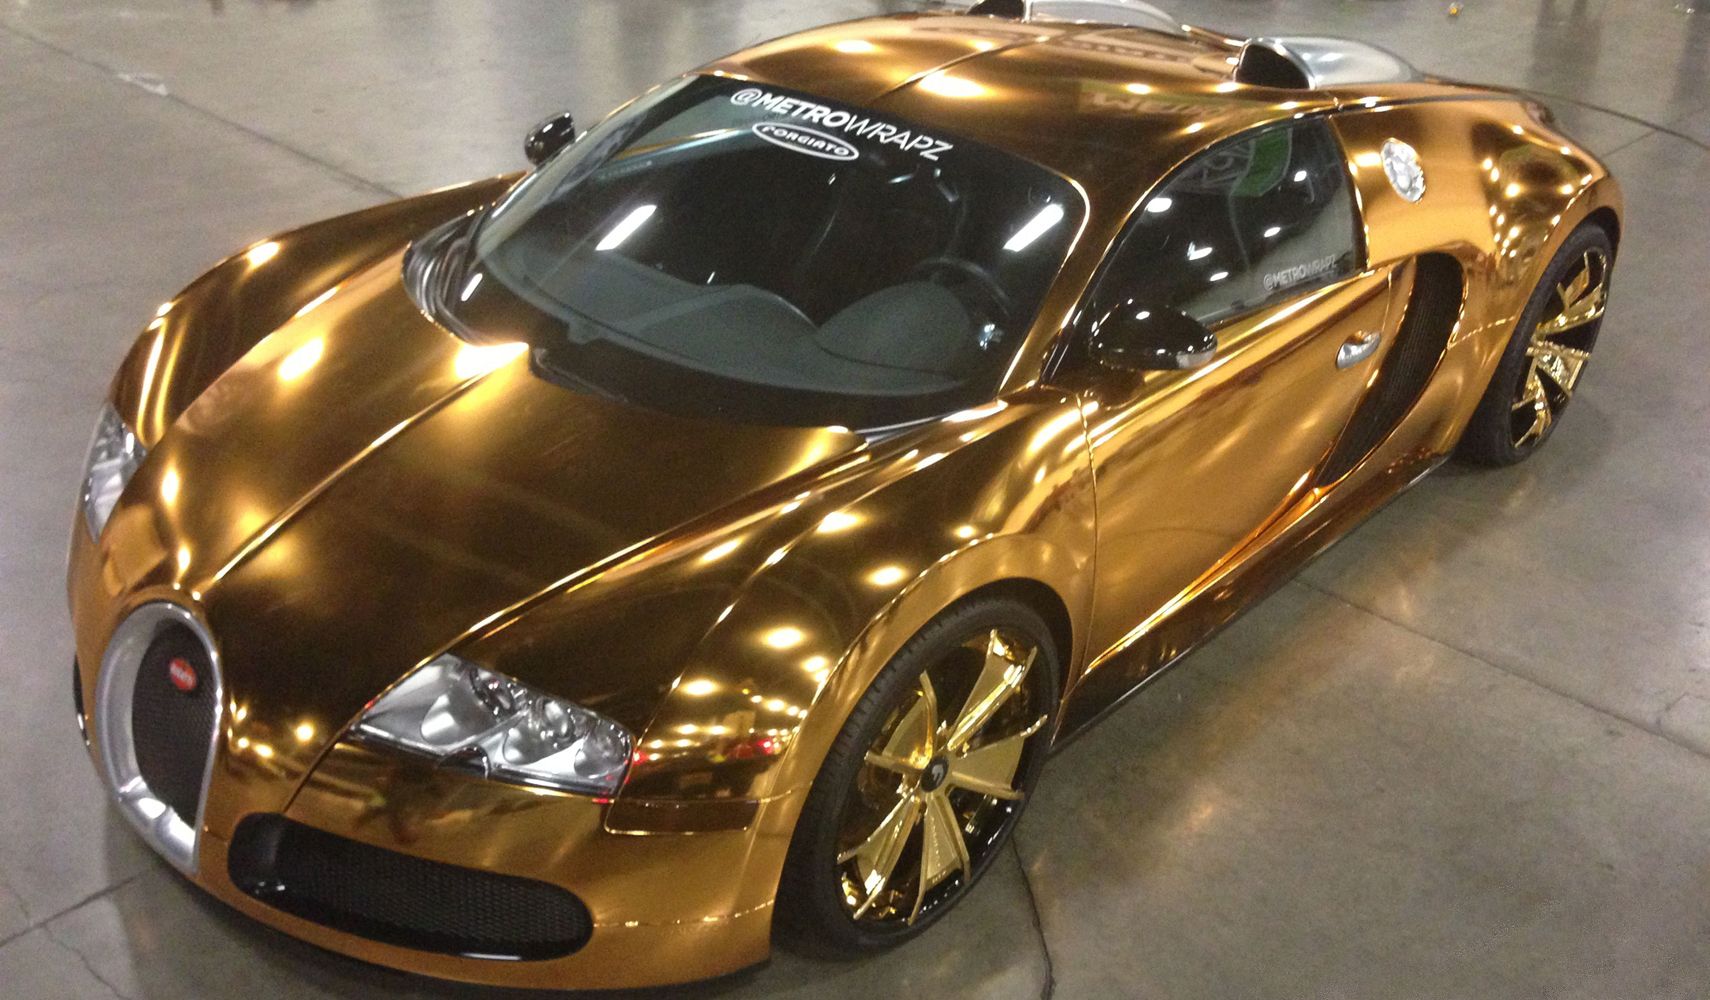 Flo Rida’s Gold Bugatti